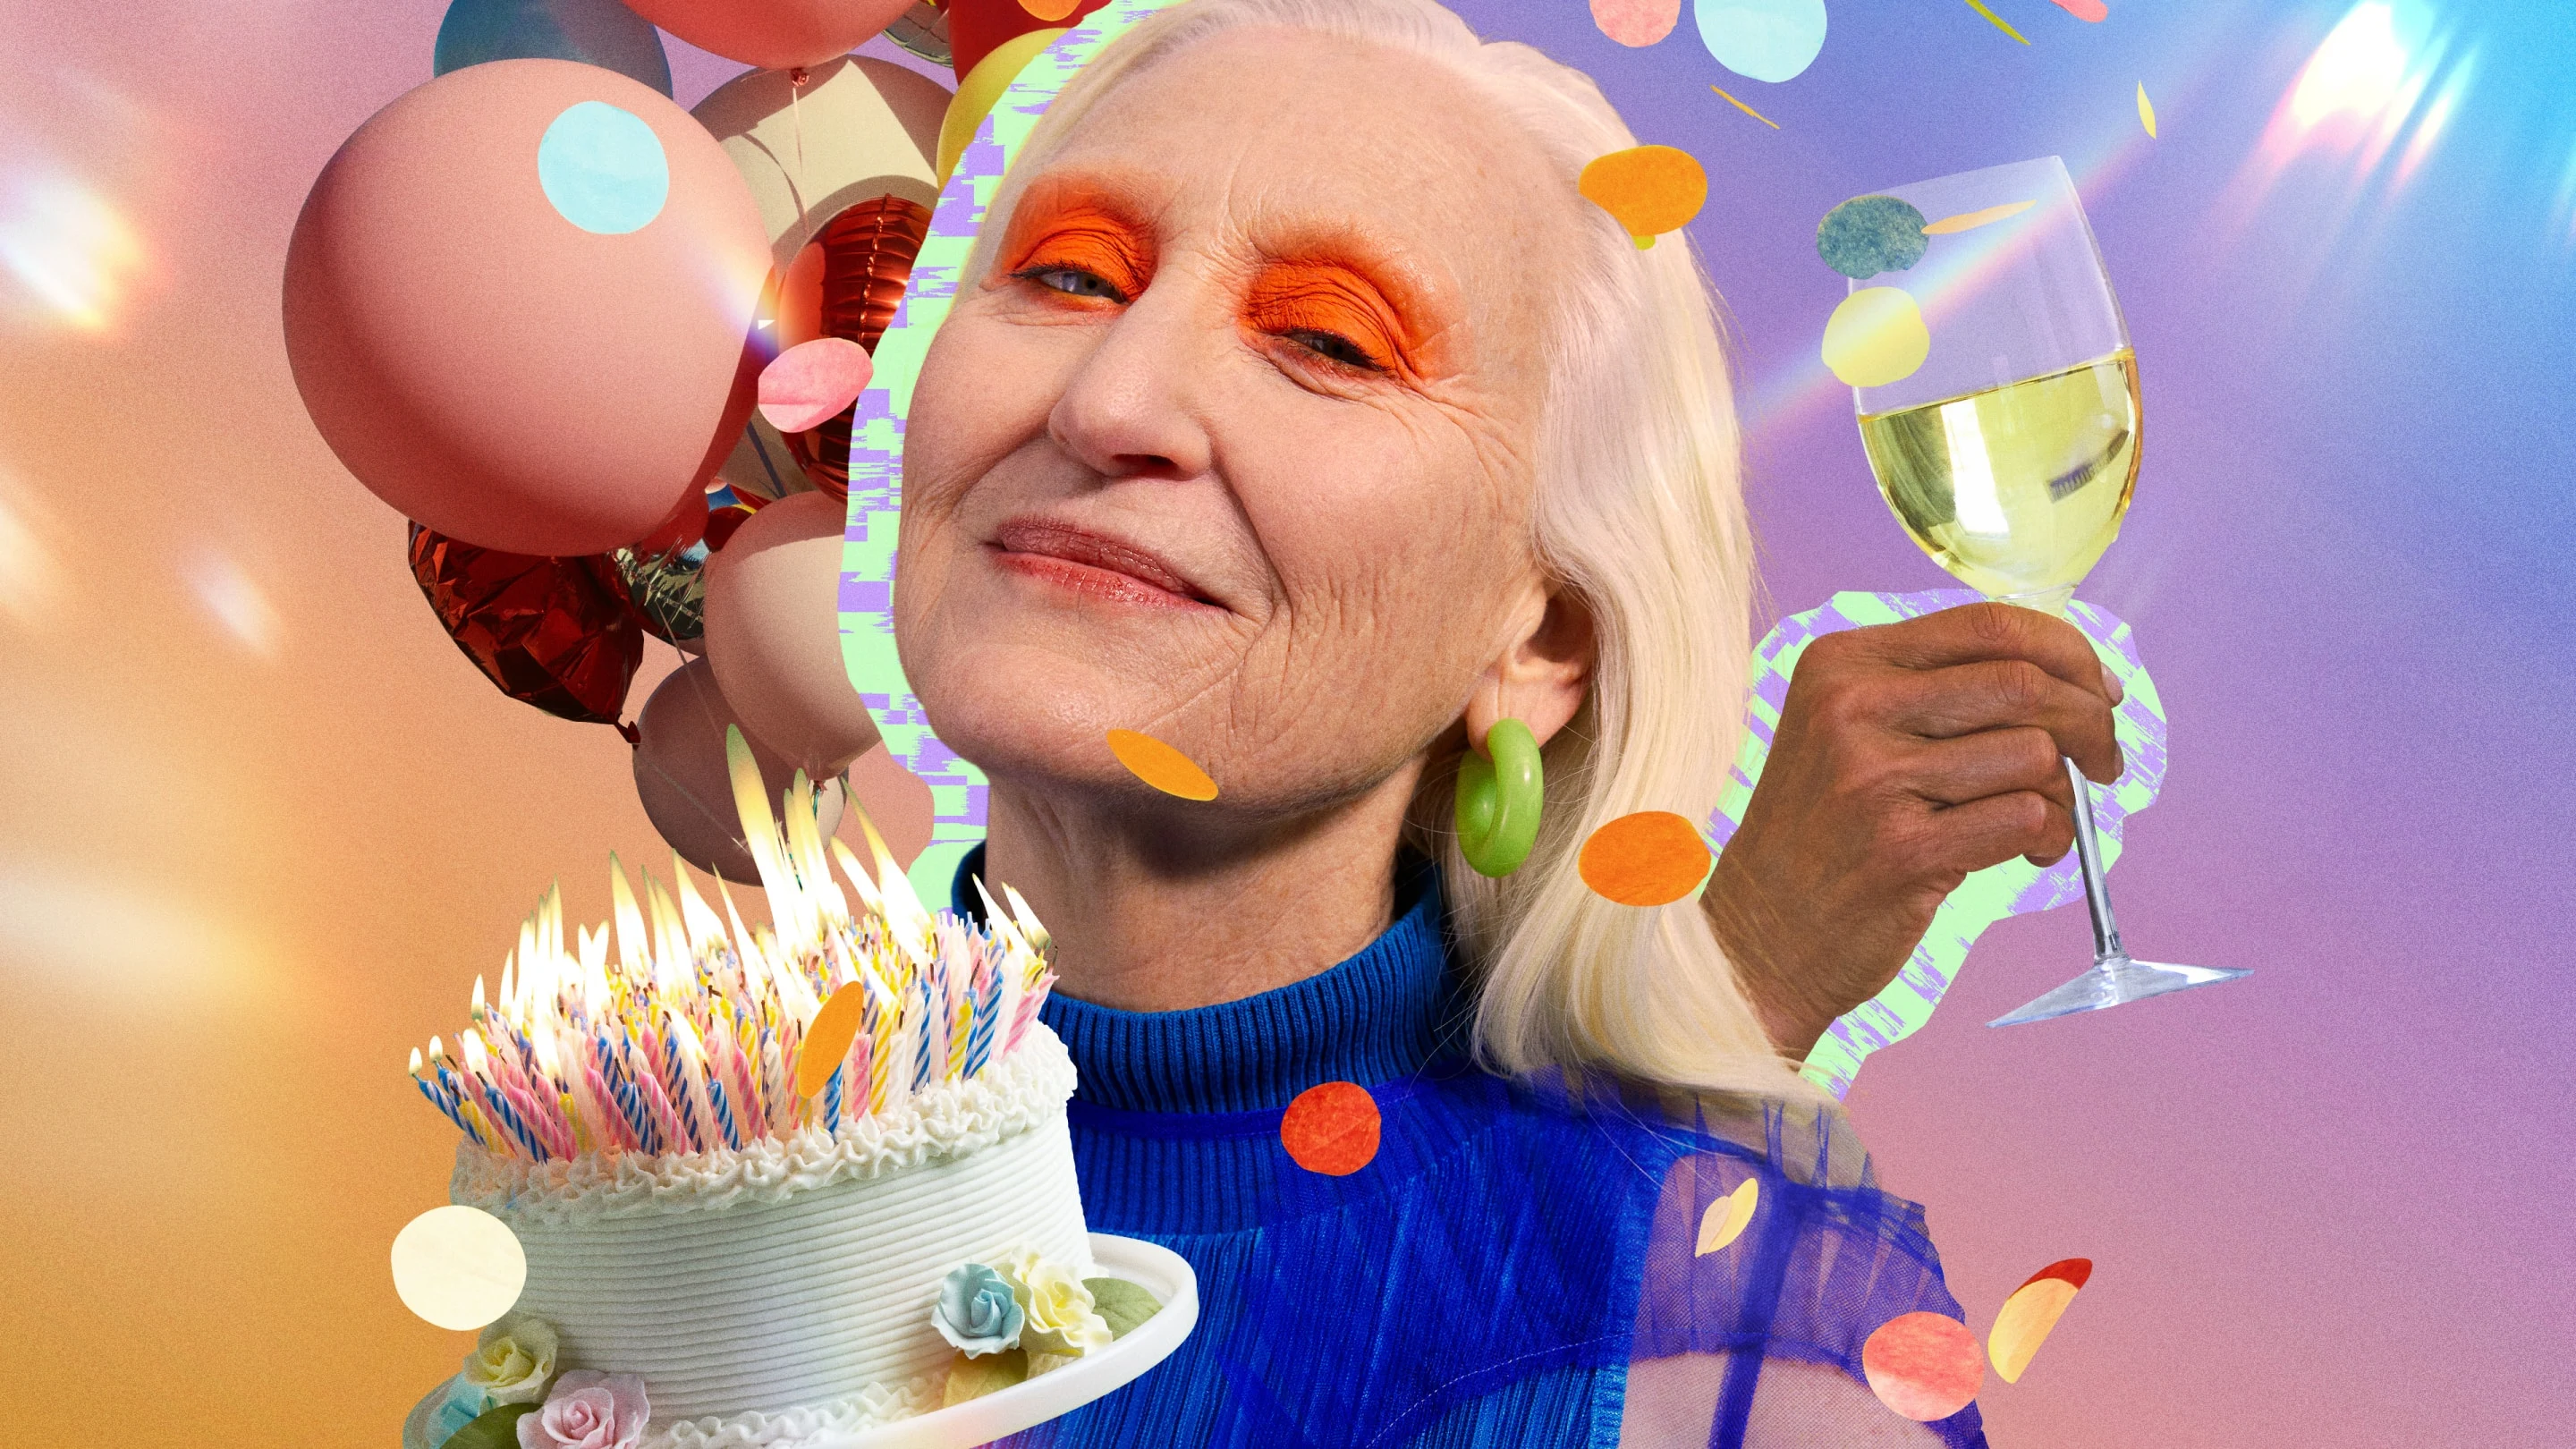 Collage que muestra a una mujer blanca mayor con maquillaje brillante en los ojos, rodeada de globos, una mano que sostiene una copa de vino y una tarta de cumpleaños llena de velas.